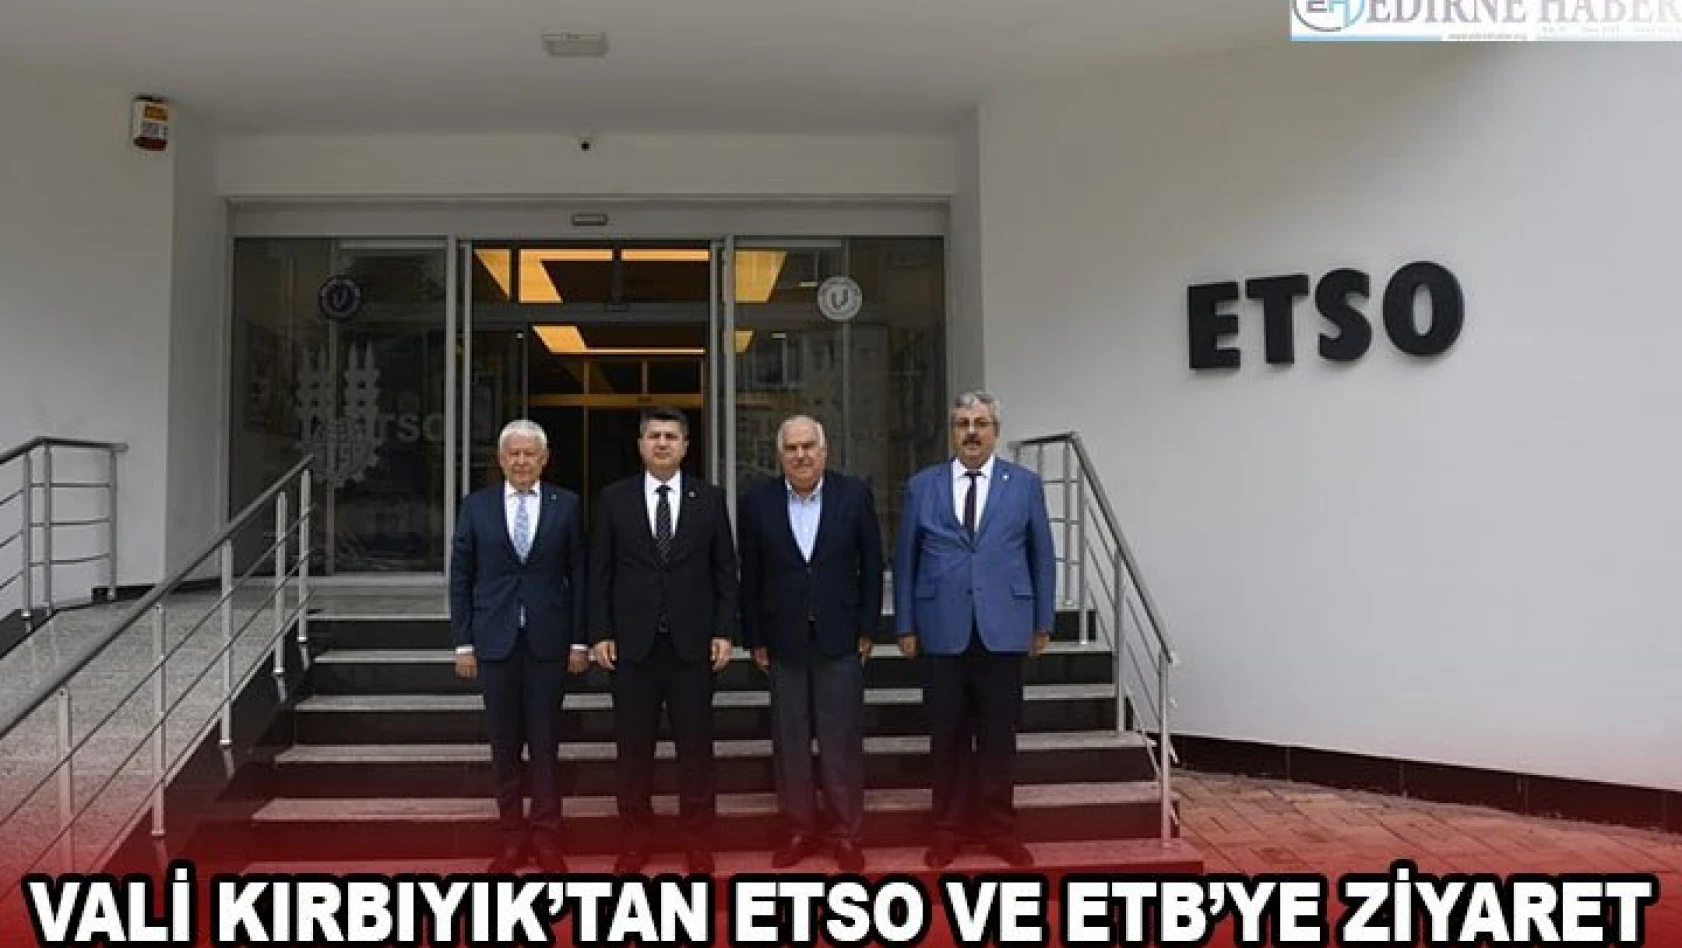 Vali Kırbıyık'tan ETSO ve ETB'ye ziyaret